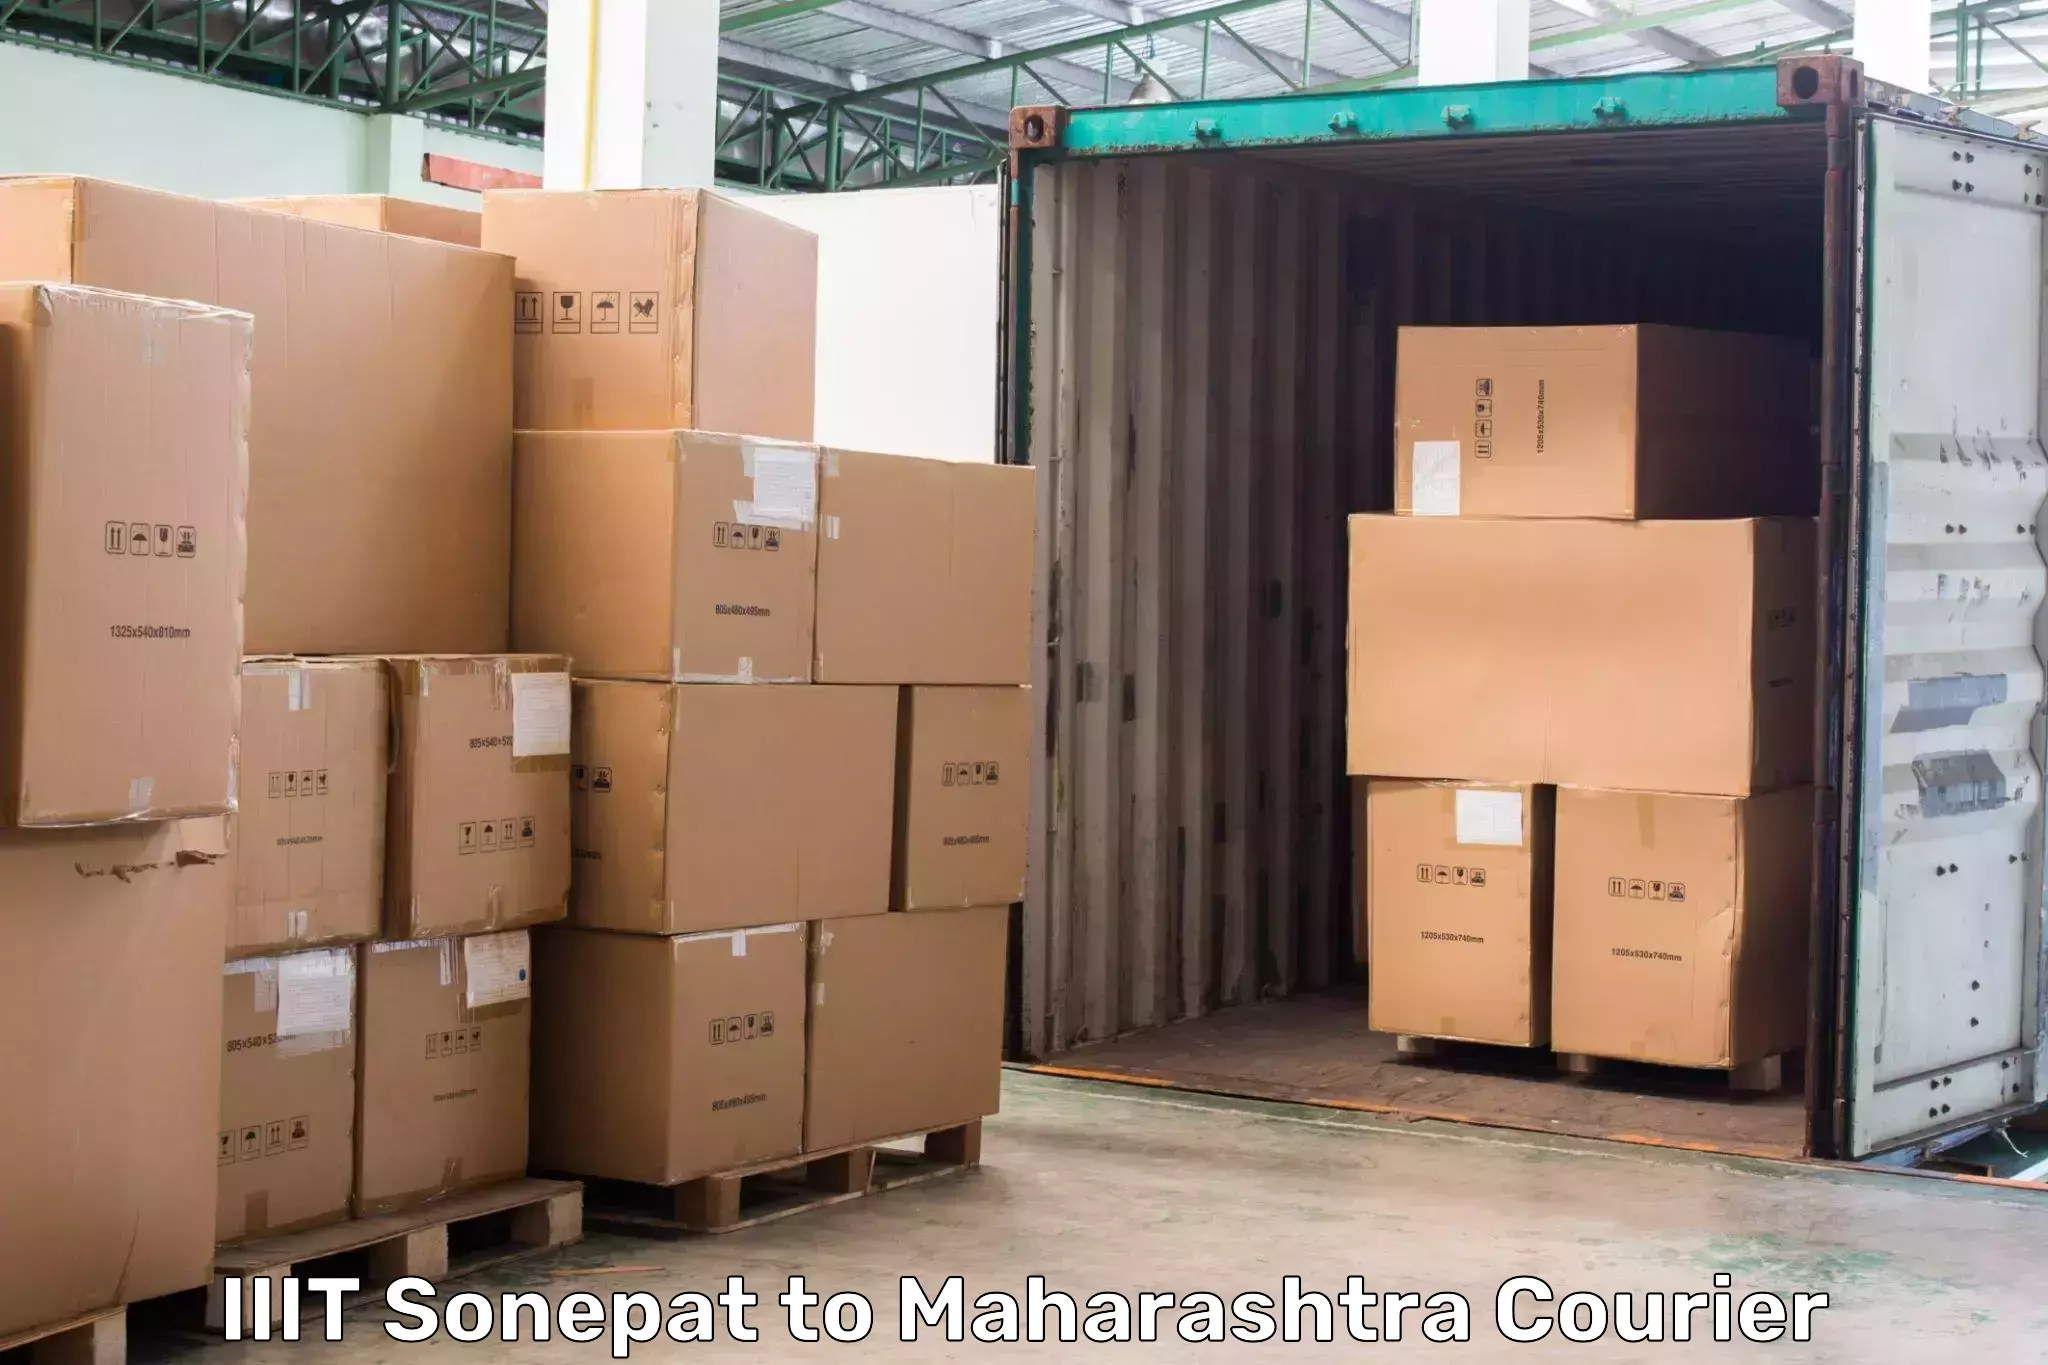 Express courier capabilities IIIT Sonepat to Vasai